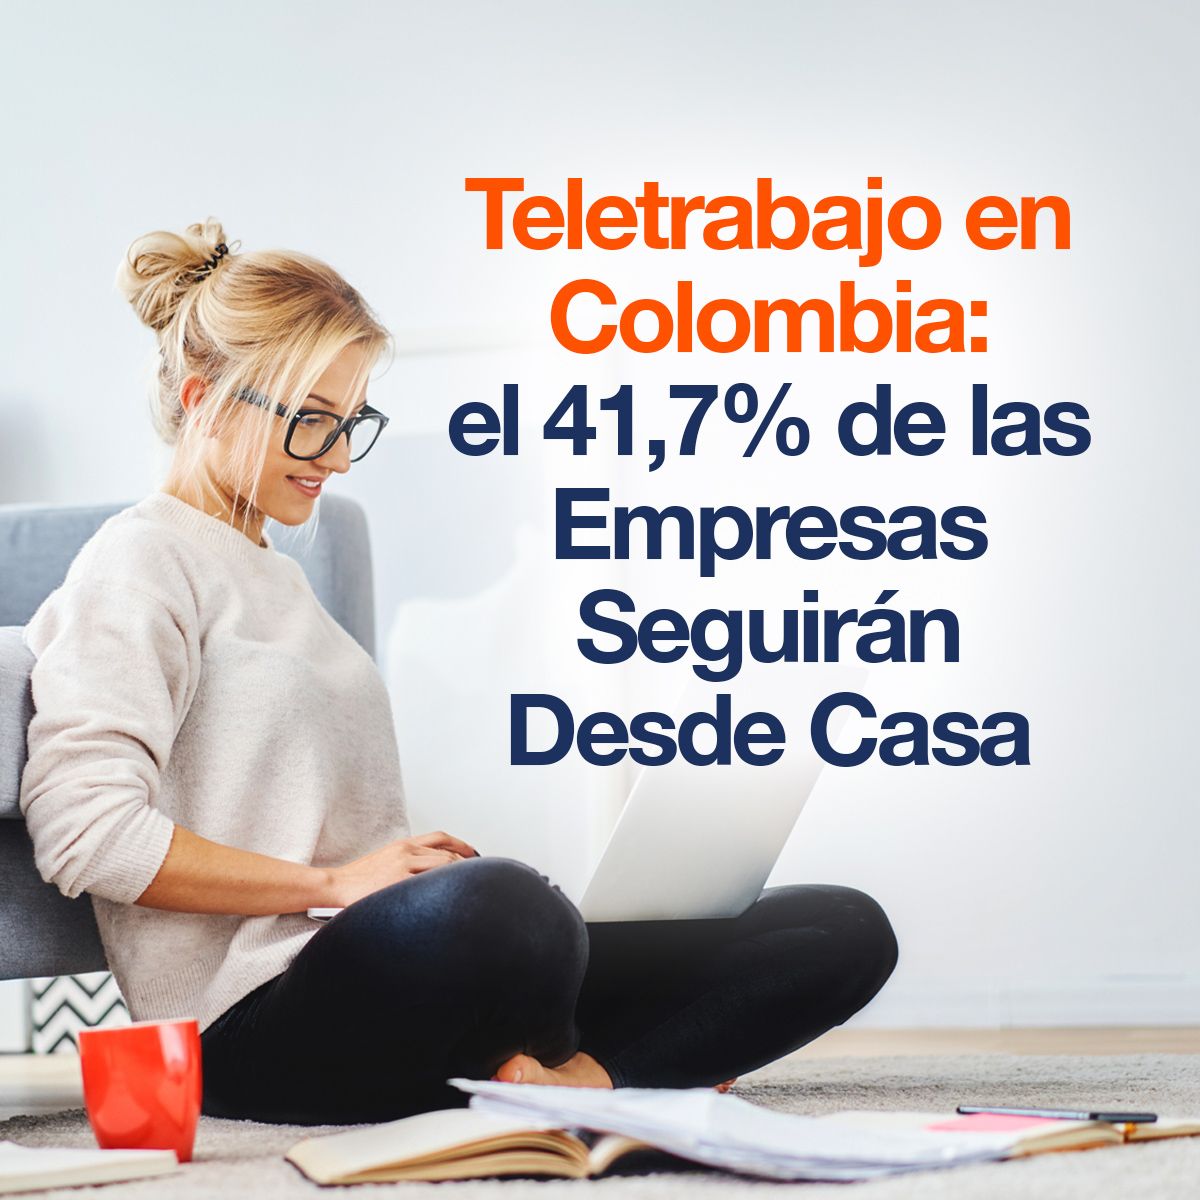 Teletrabajo en Colombia: el 41,7% de las Empresas Seguirán Desde Casa